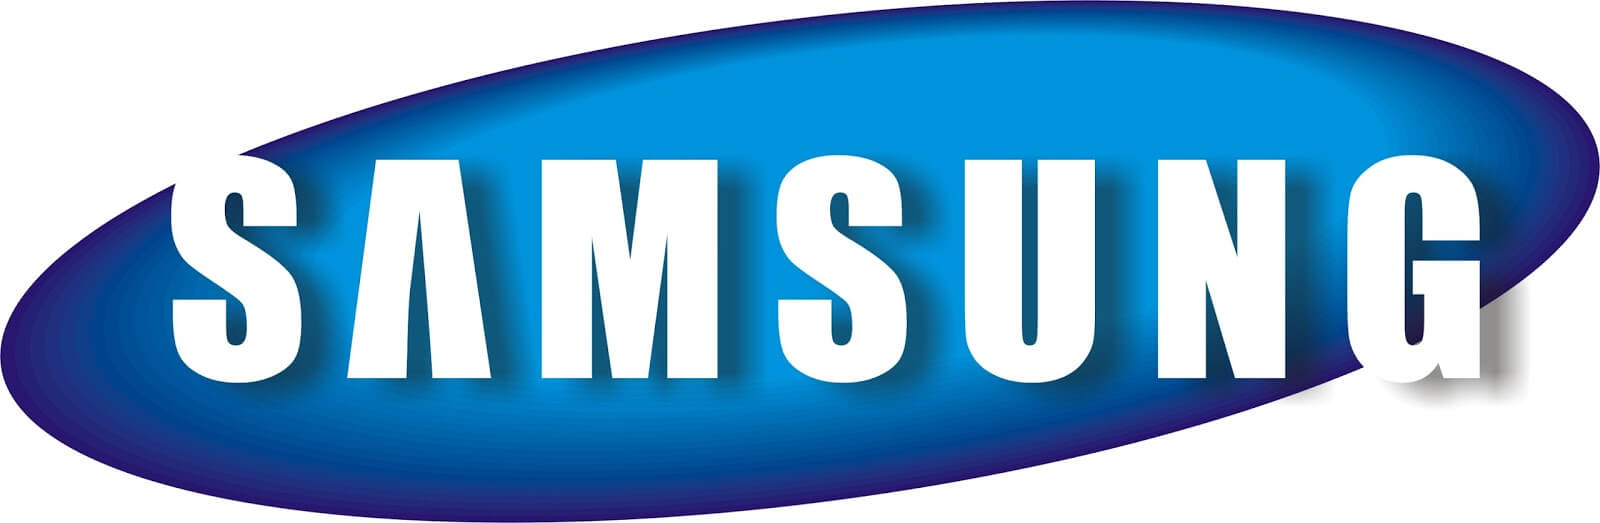 Samsung Galaxy M62 Teknik Özelleri Nelerdir